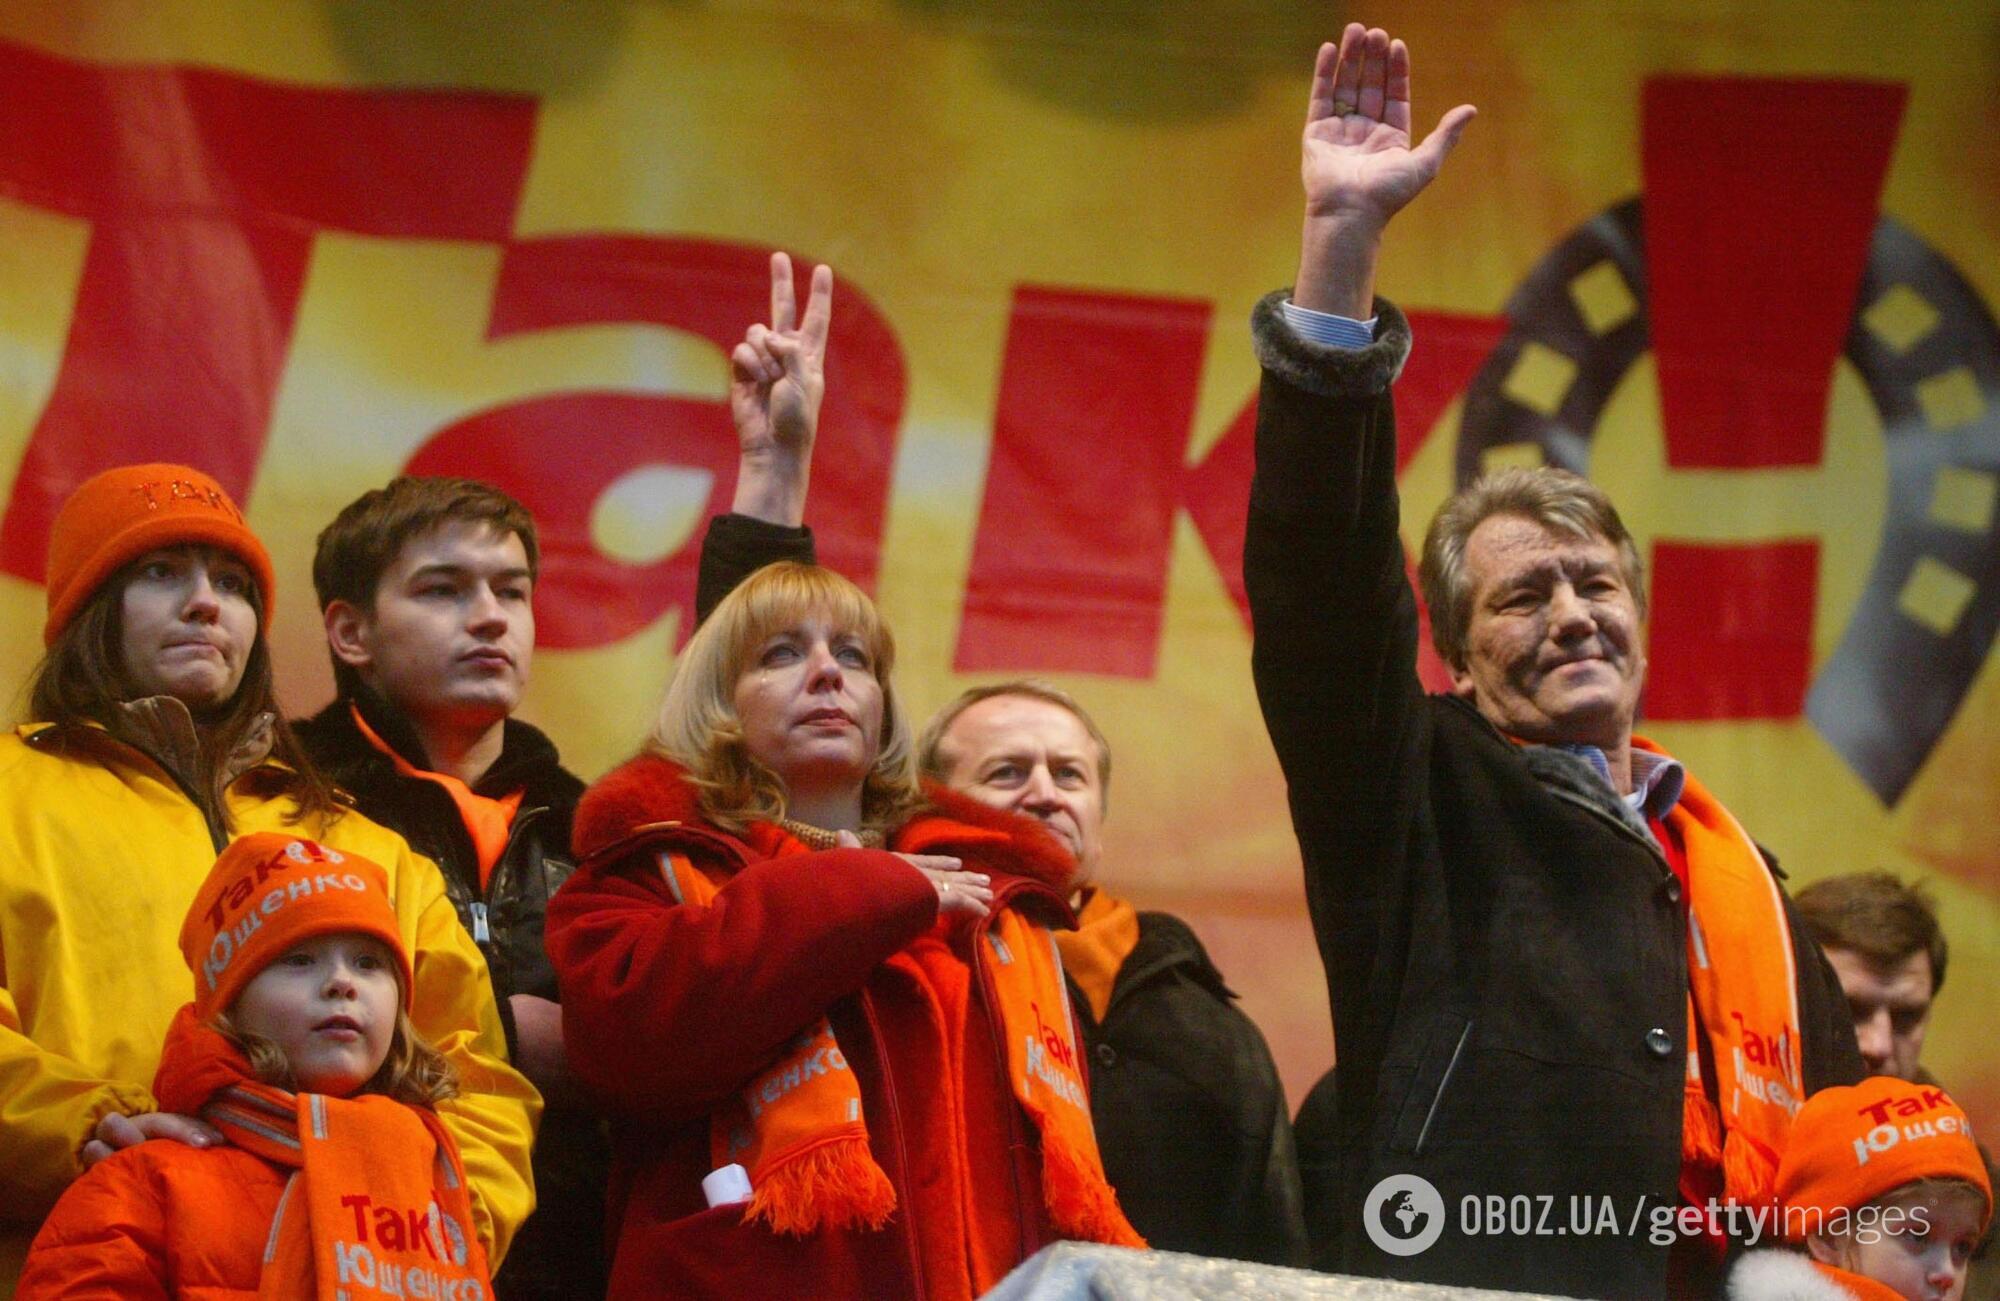 В результате переголосования 26 декабря 2004 года победу на выборах президента одержал Виктор Ющенко